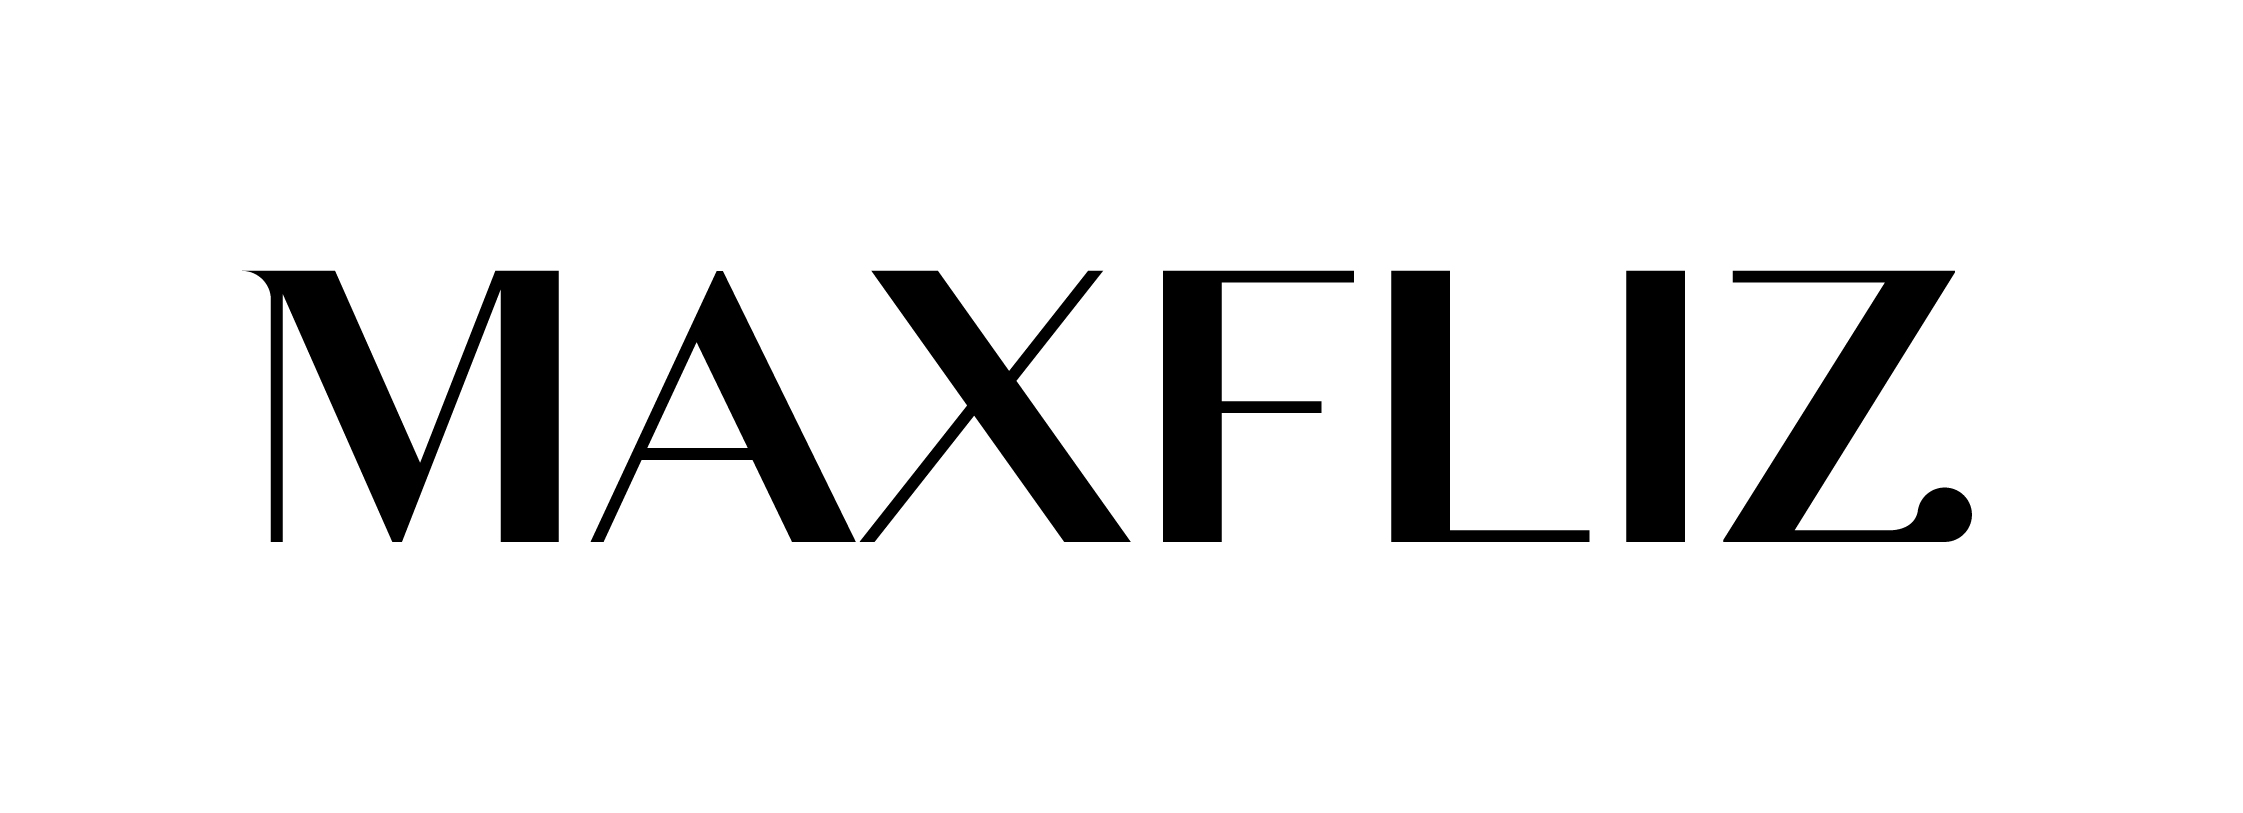 maxfliz logotyp odmiana 1 podstawowa black